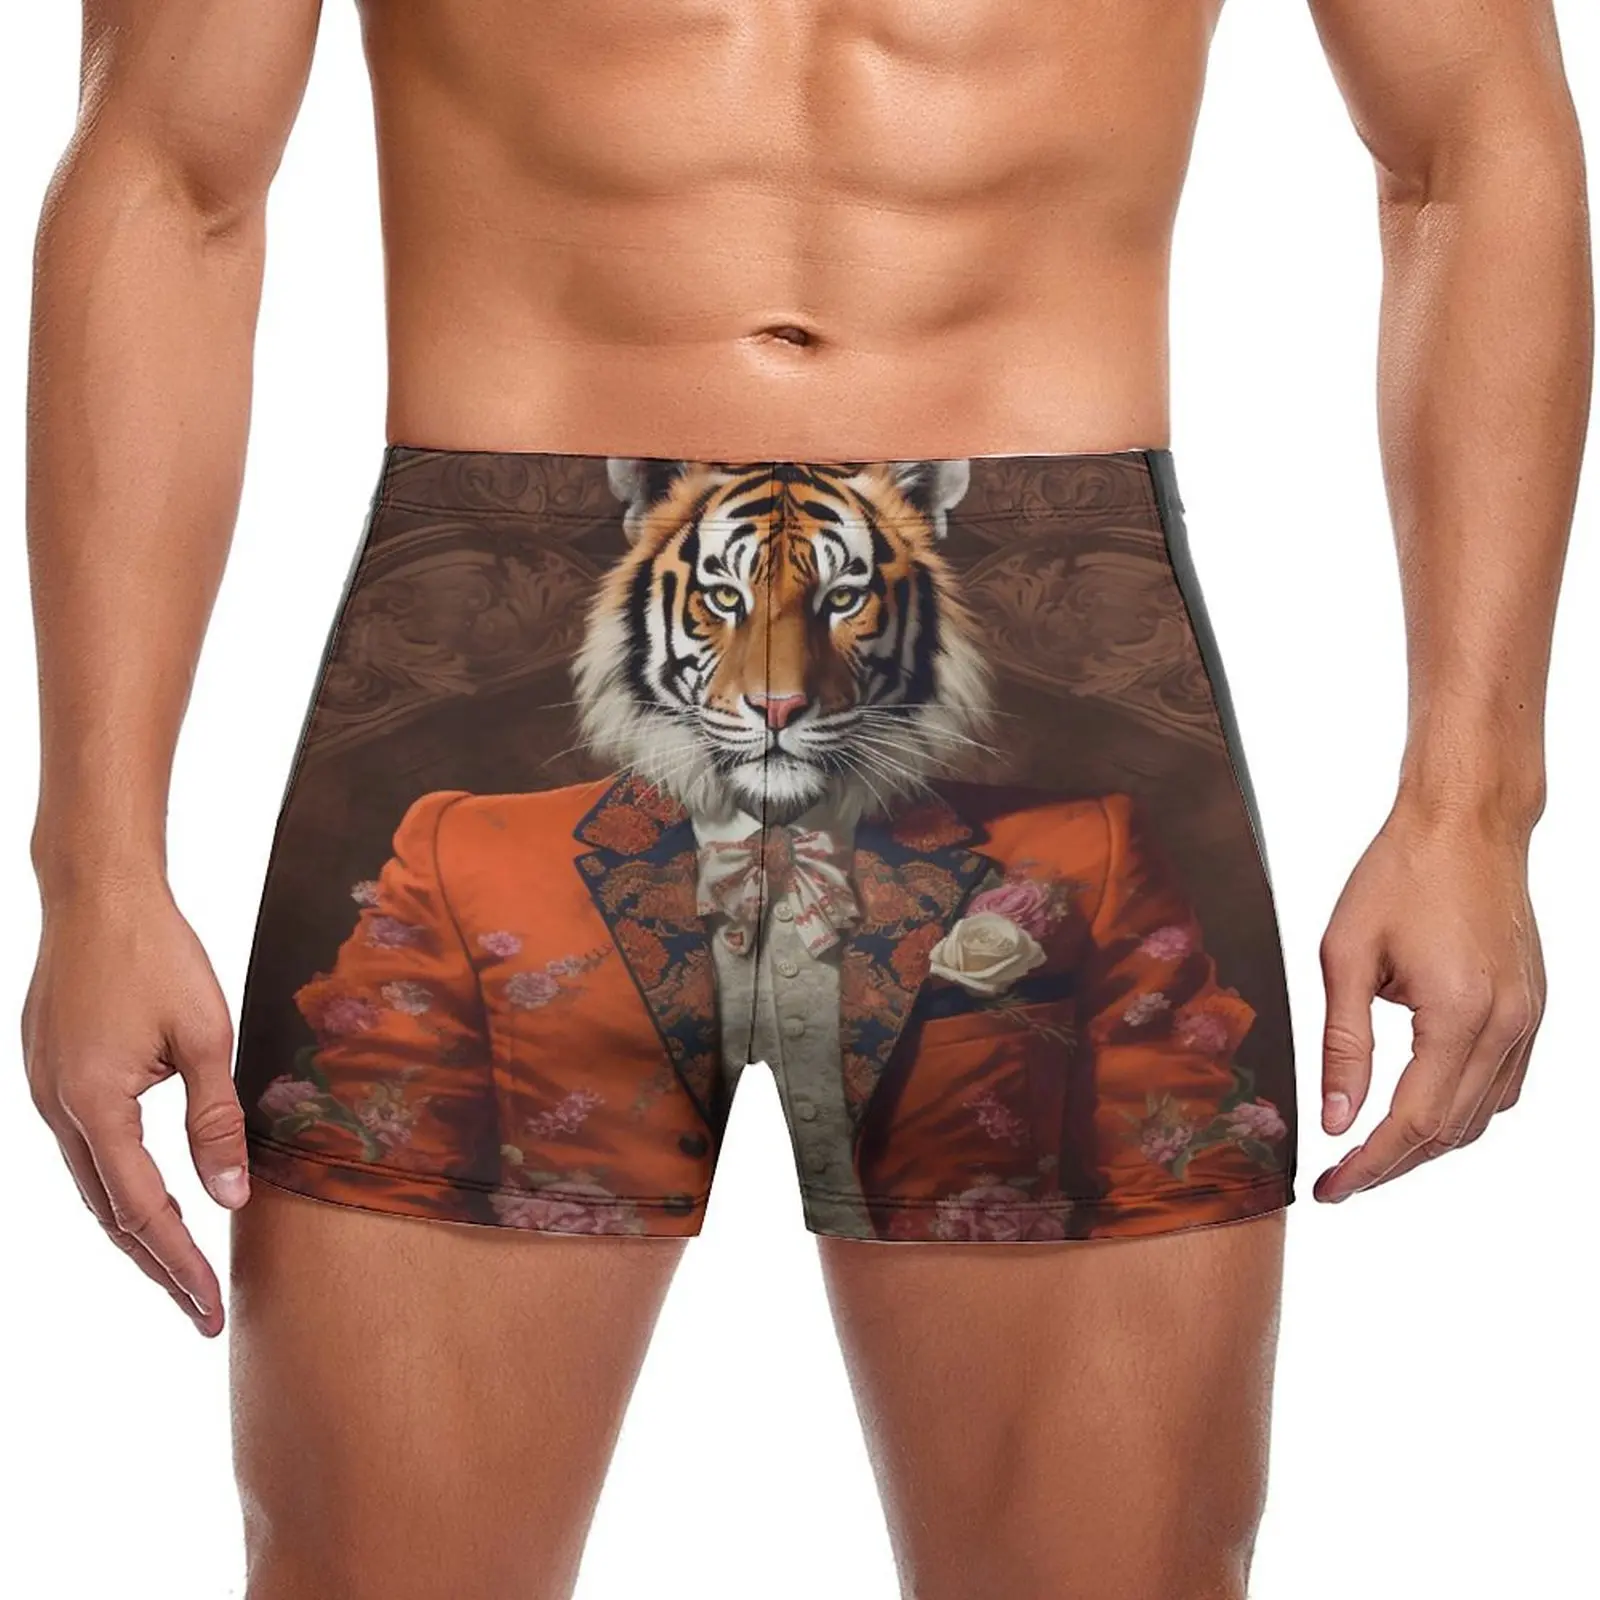 

Купальные трусы Tiger Dapper, одежда с принтом, быстросохнущие боксеры для плавания, пляжный мужской купальник большого размера